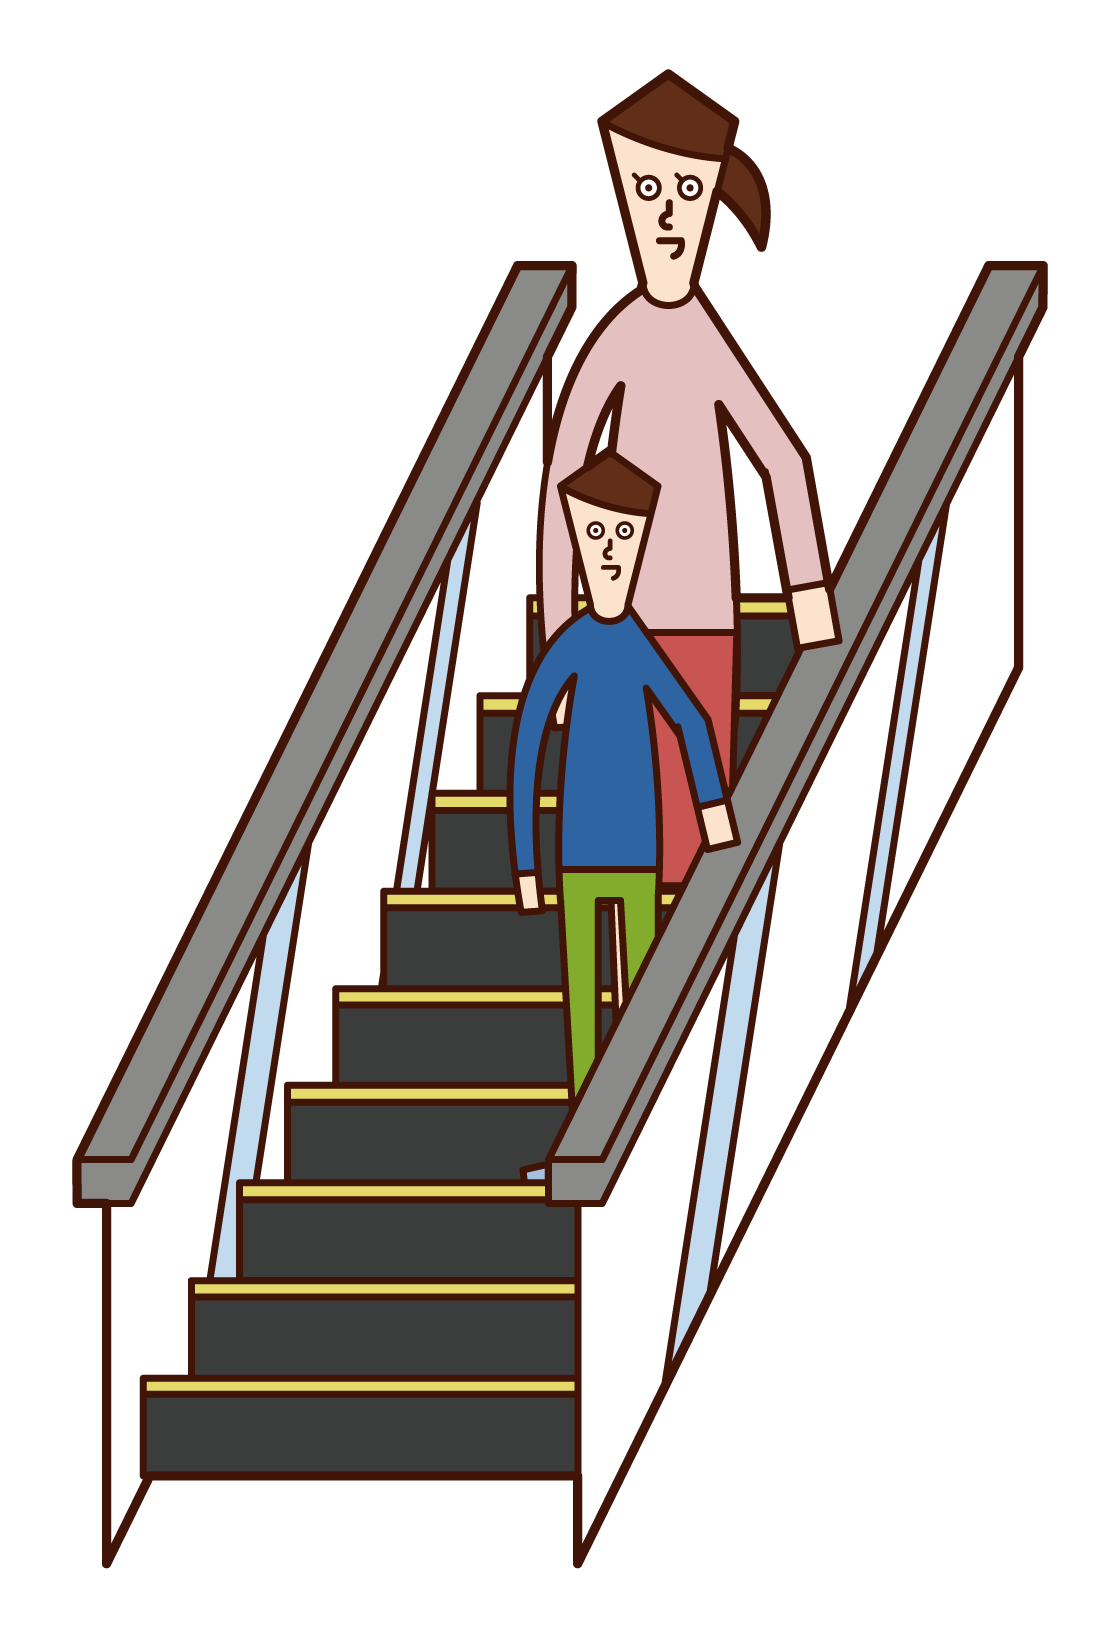 乘坐自動扶梯的父母和孩子的插圖